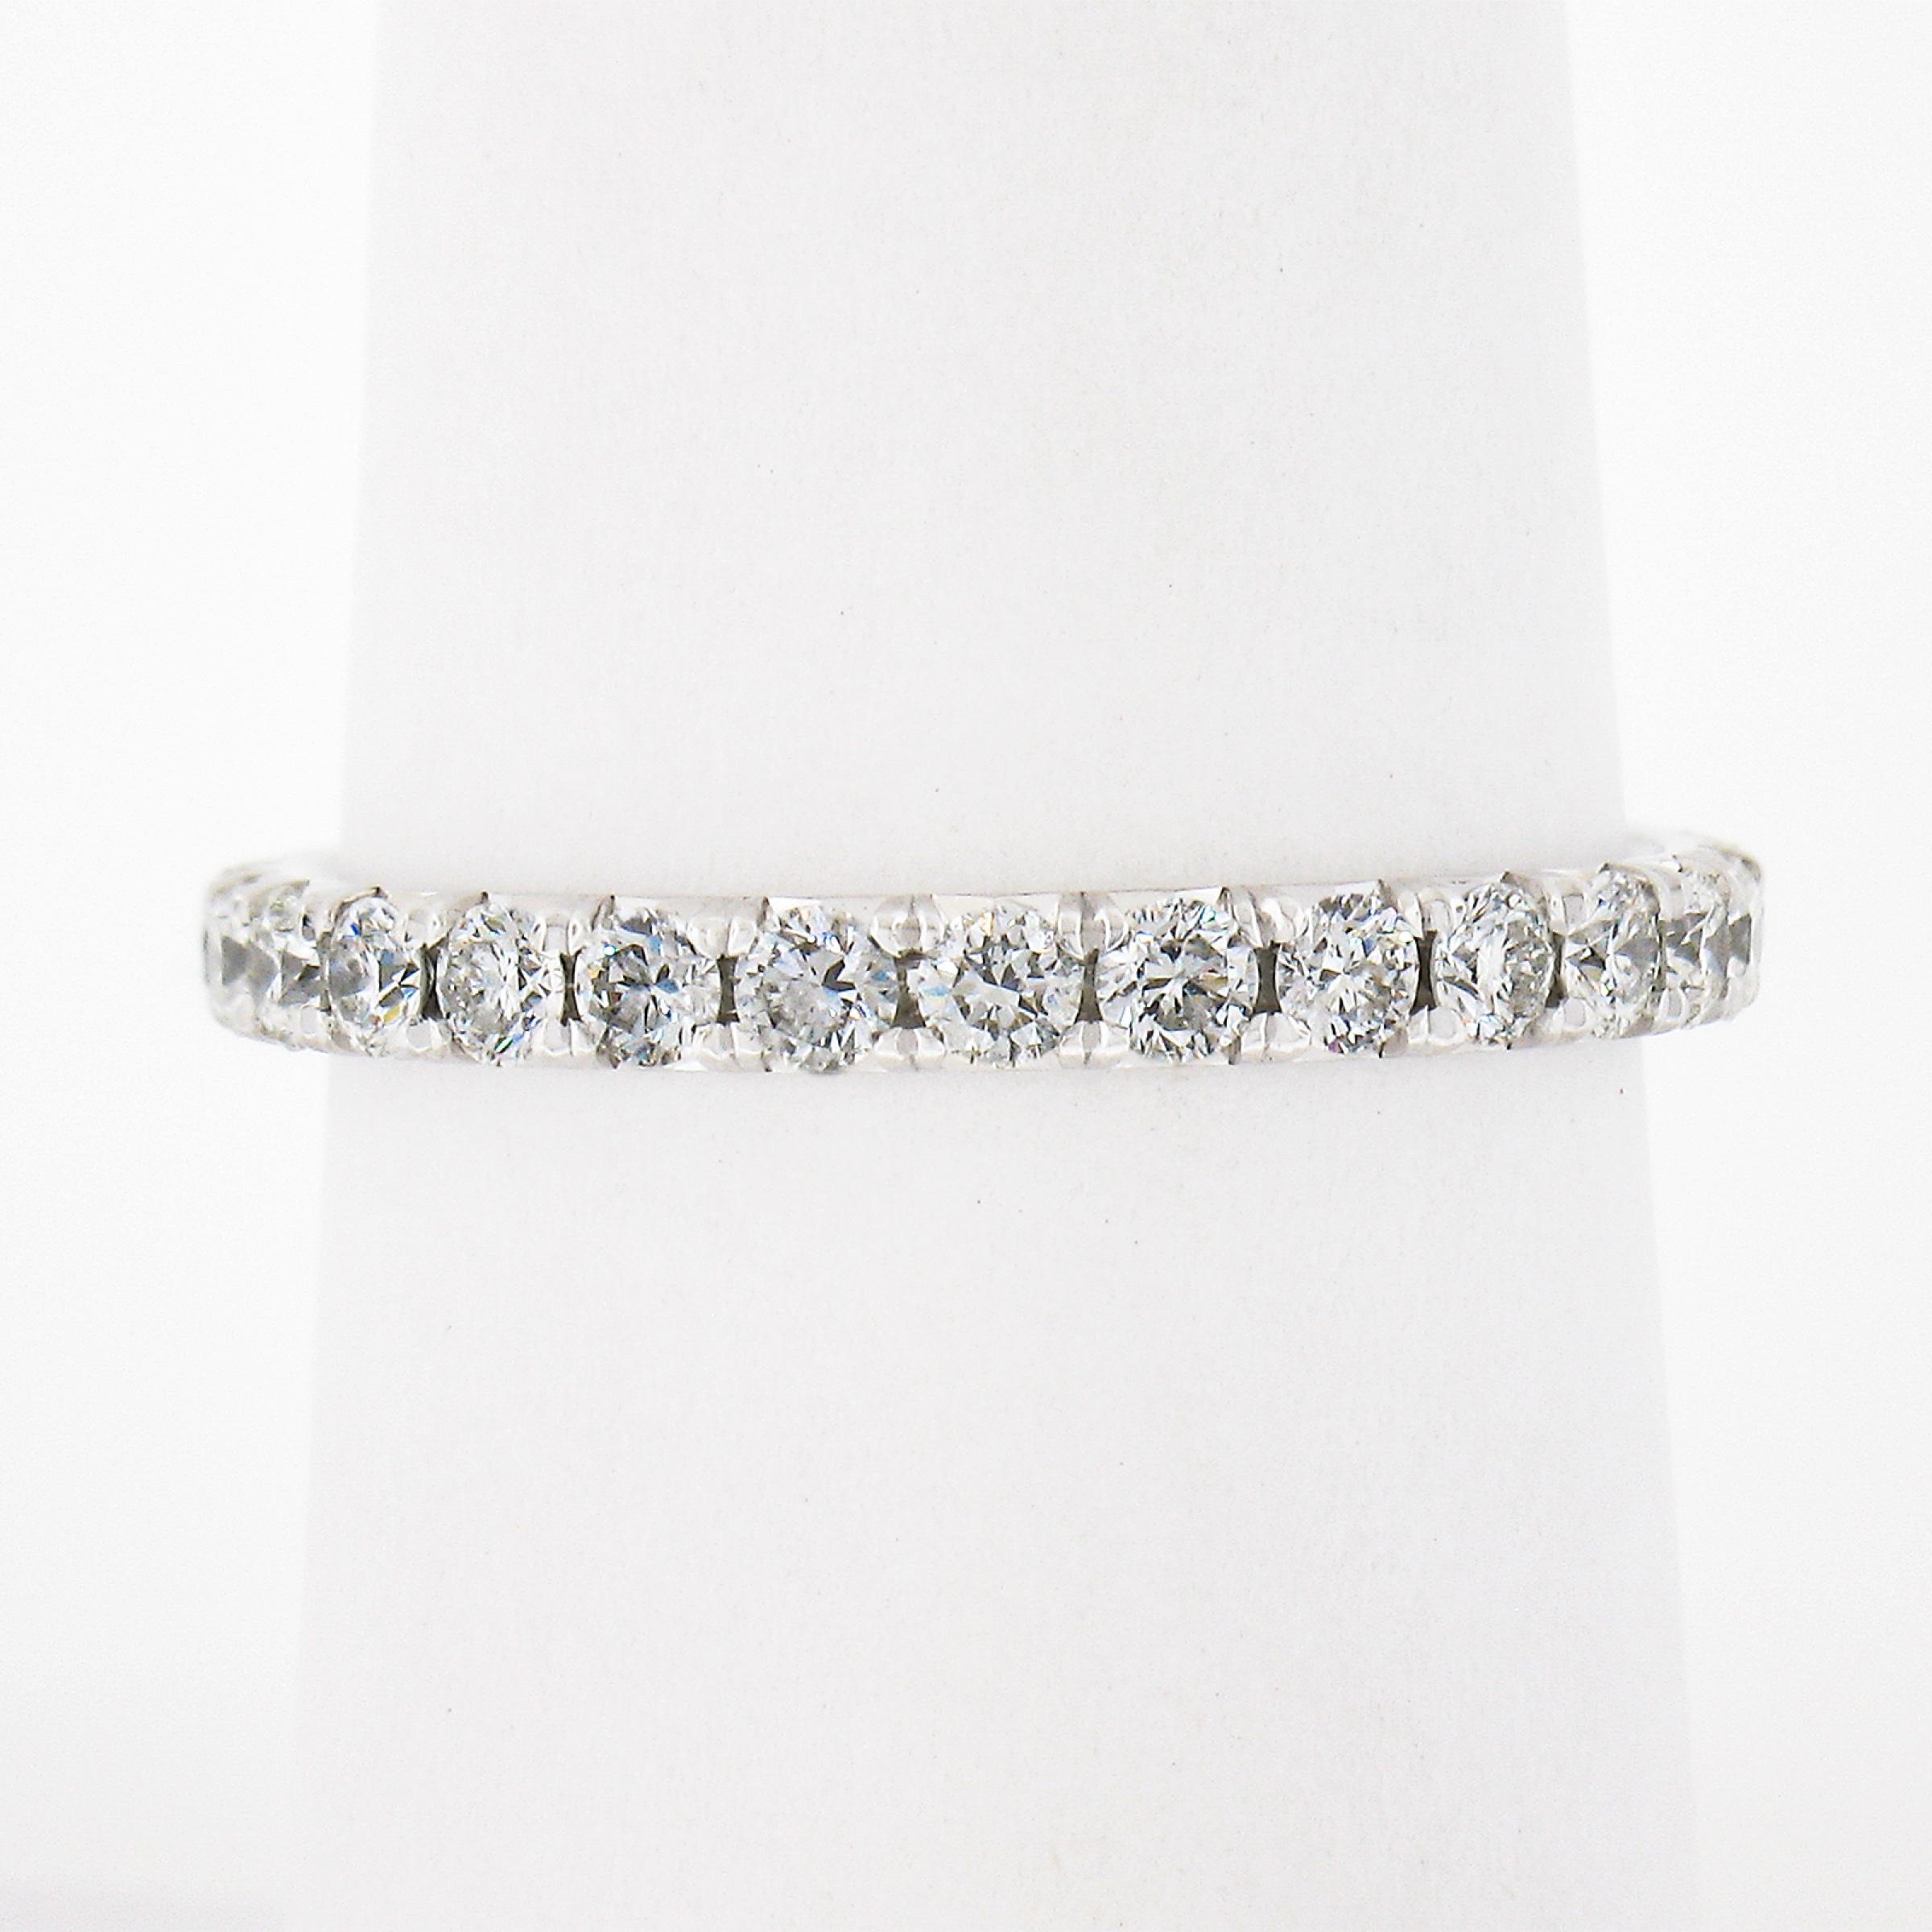 Este anillo de eternidad Blue Nile está hecho de platino 950 macizo y tiene 27 diamantes redondos de talla brillante perfectamente engastados alrededor de la banda. Este anillo de eternidad bien hecho tiene un aspecto delgado y delicado en el dedo y